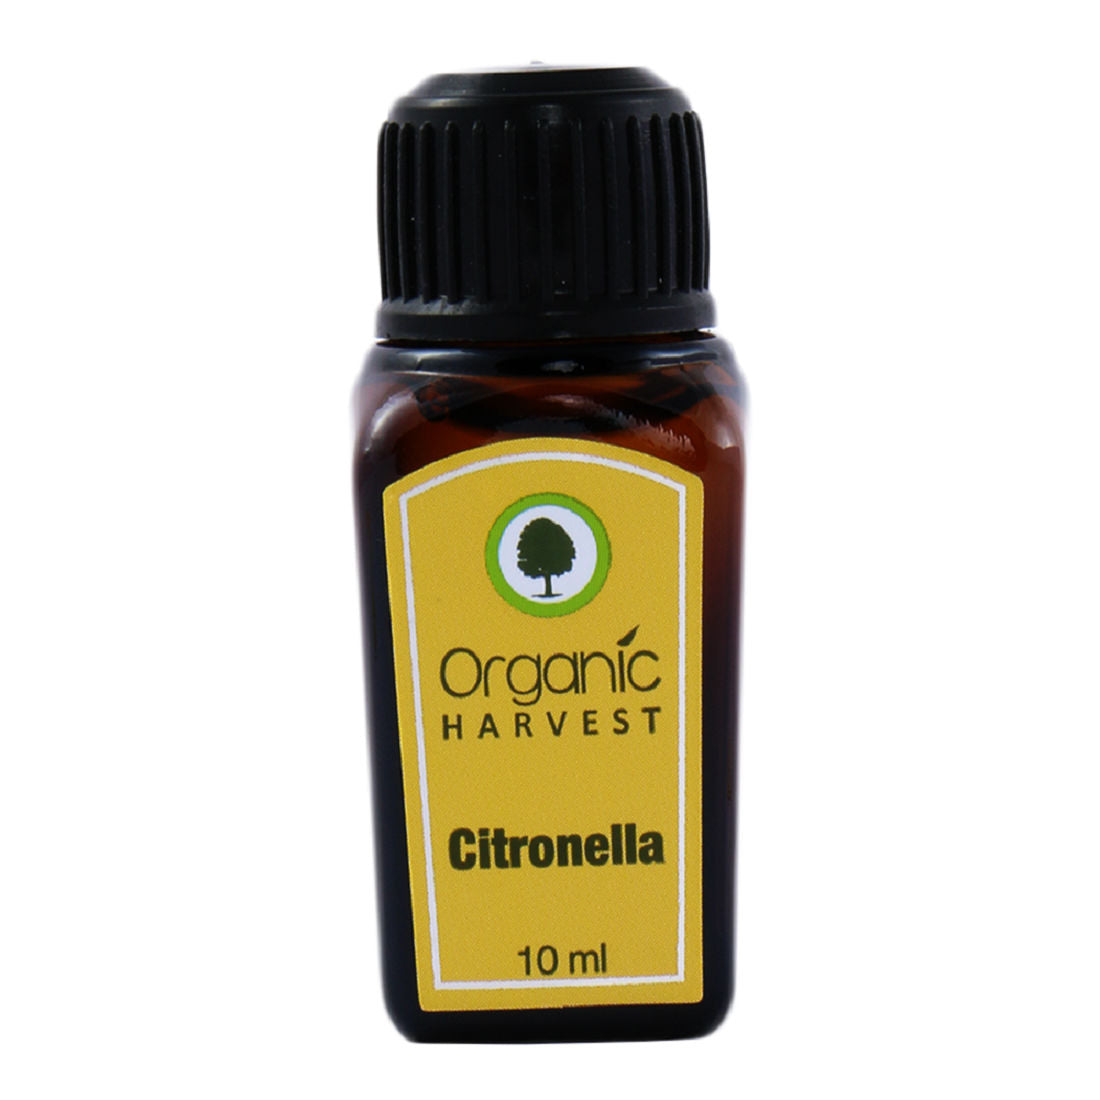 Organic Harvest Citronella Essential Oil